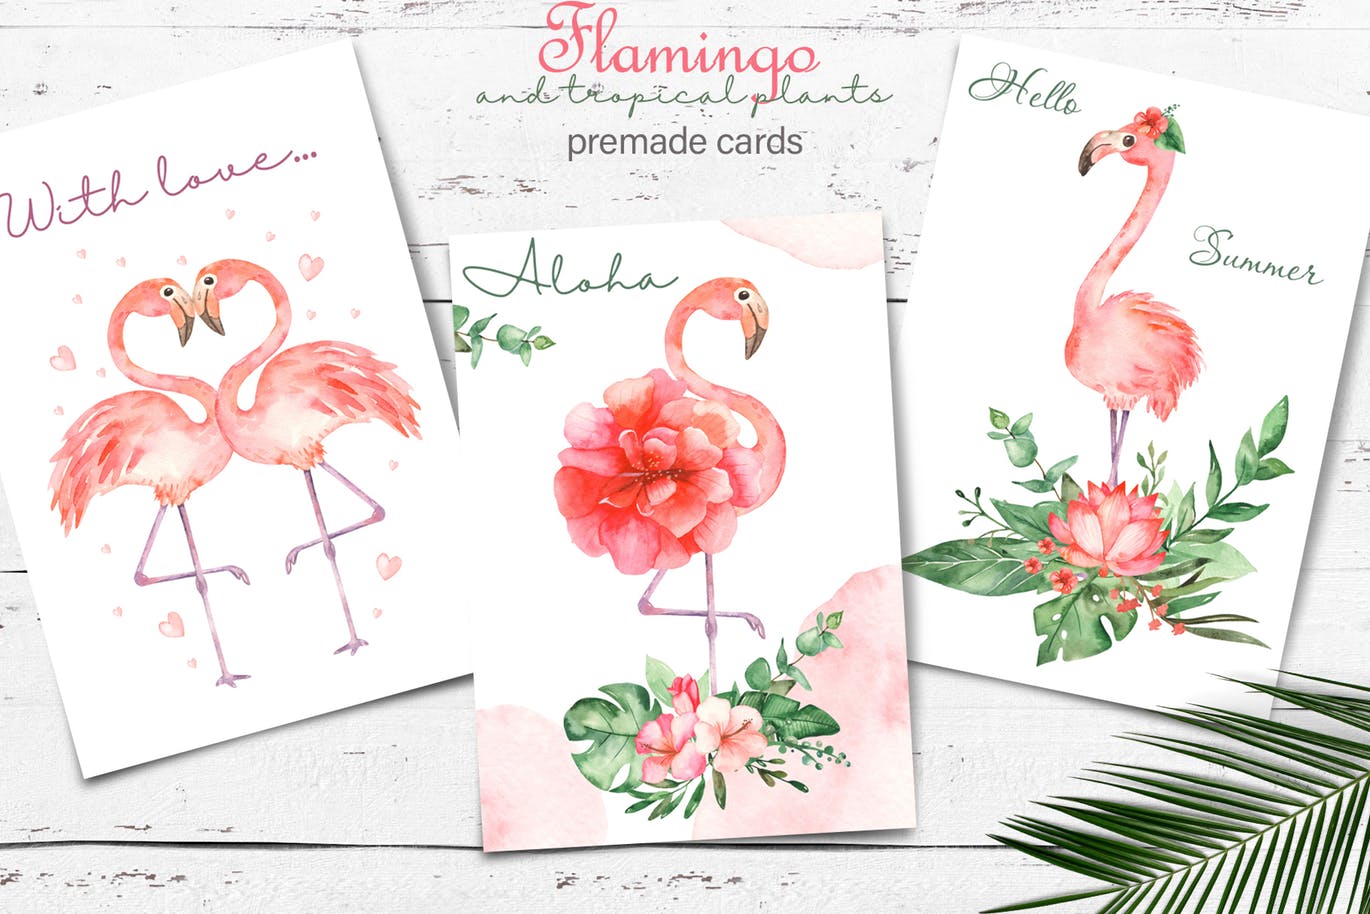 火烈鸟＆热带植物水彩插画素材 Watercolor flamingos and tropical plants插图(10)